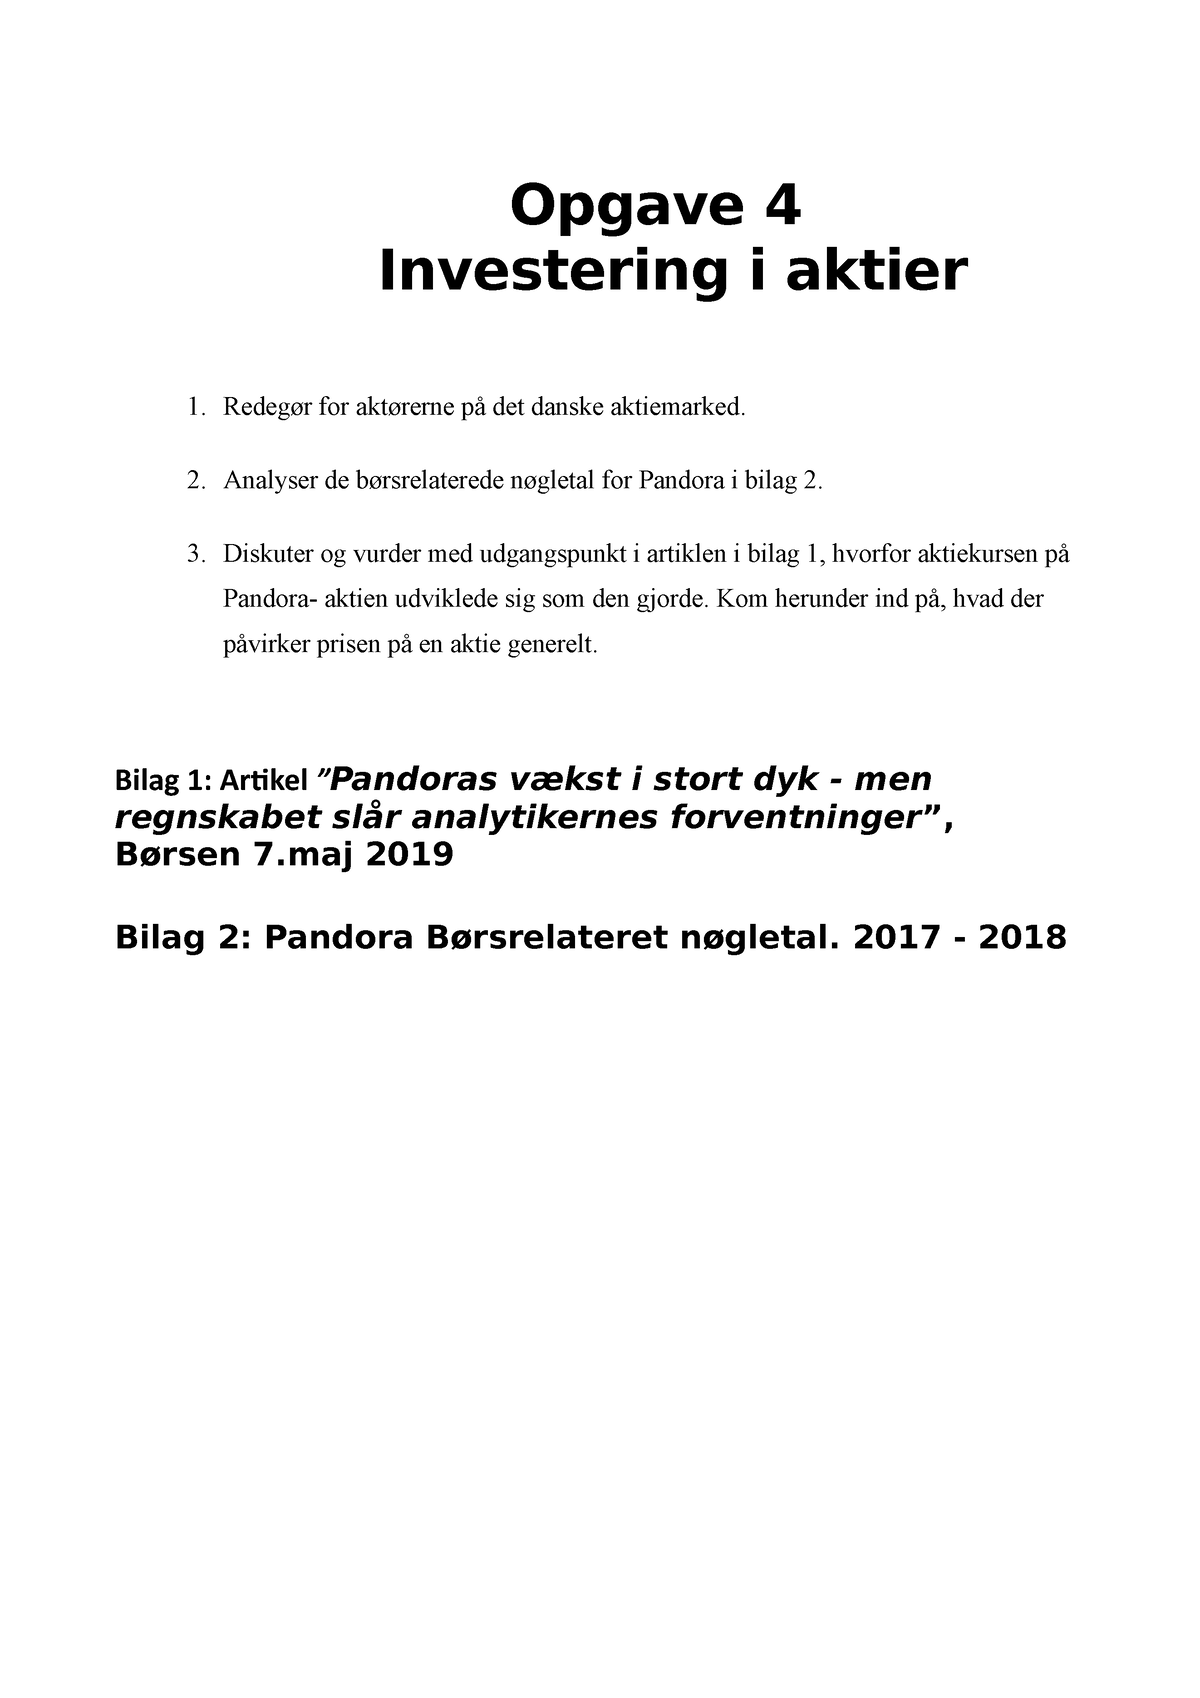 Smigre stavelse internettet Eksamensspørgsmål Investering i aktier - Opgave 4 Investering i aktier 1.  Redegør for aktørerne på - Studocu